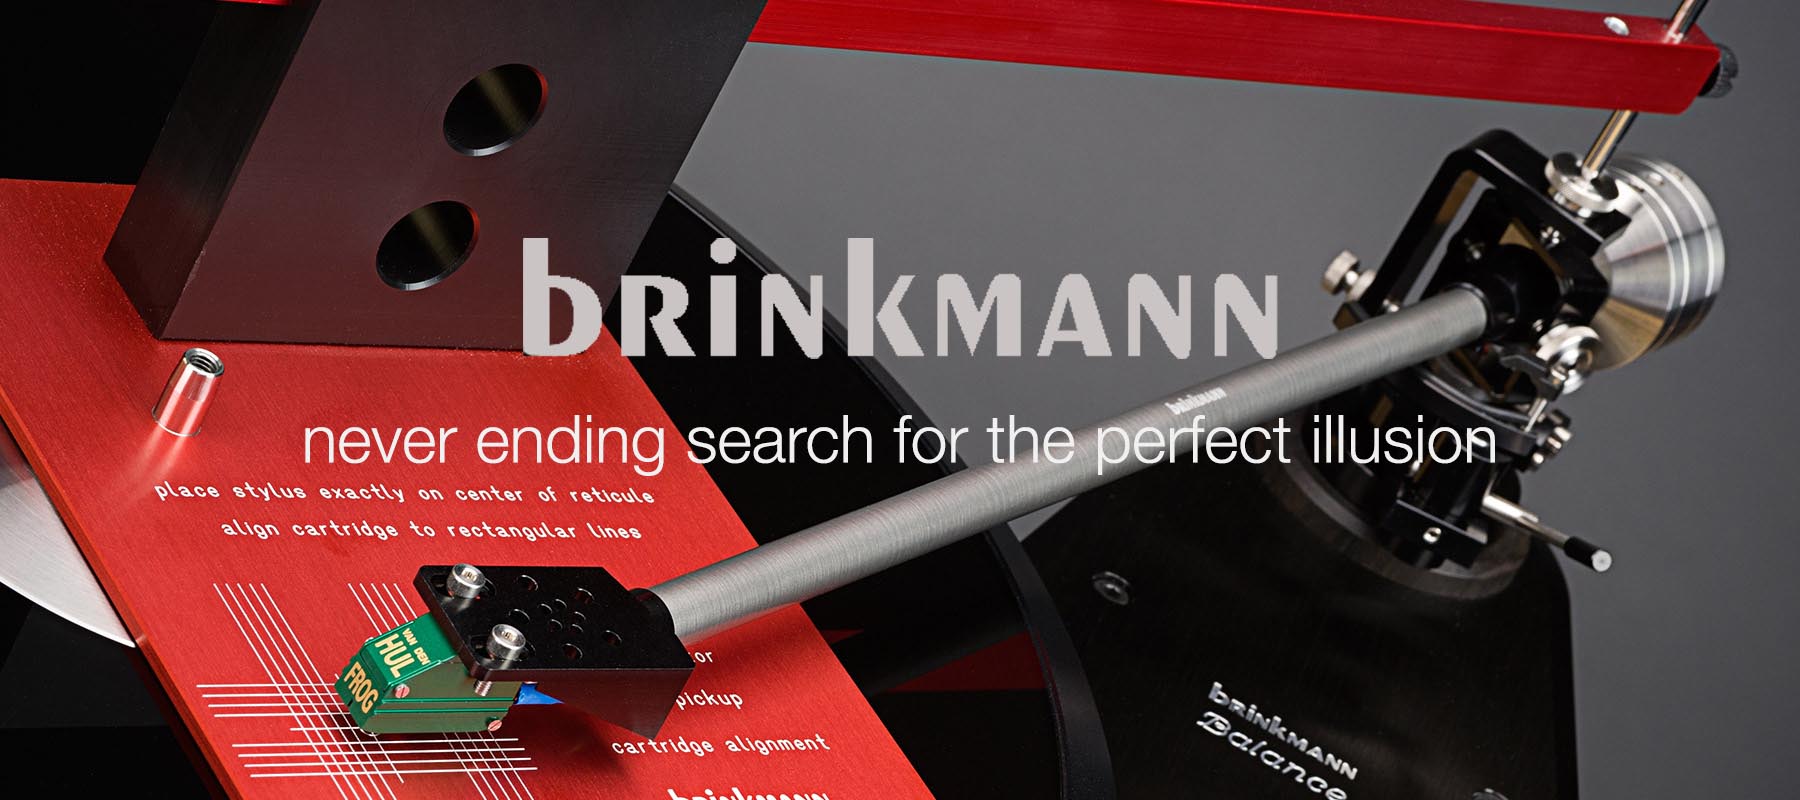 Brinkmann review